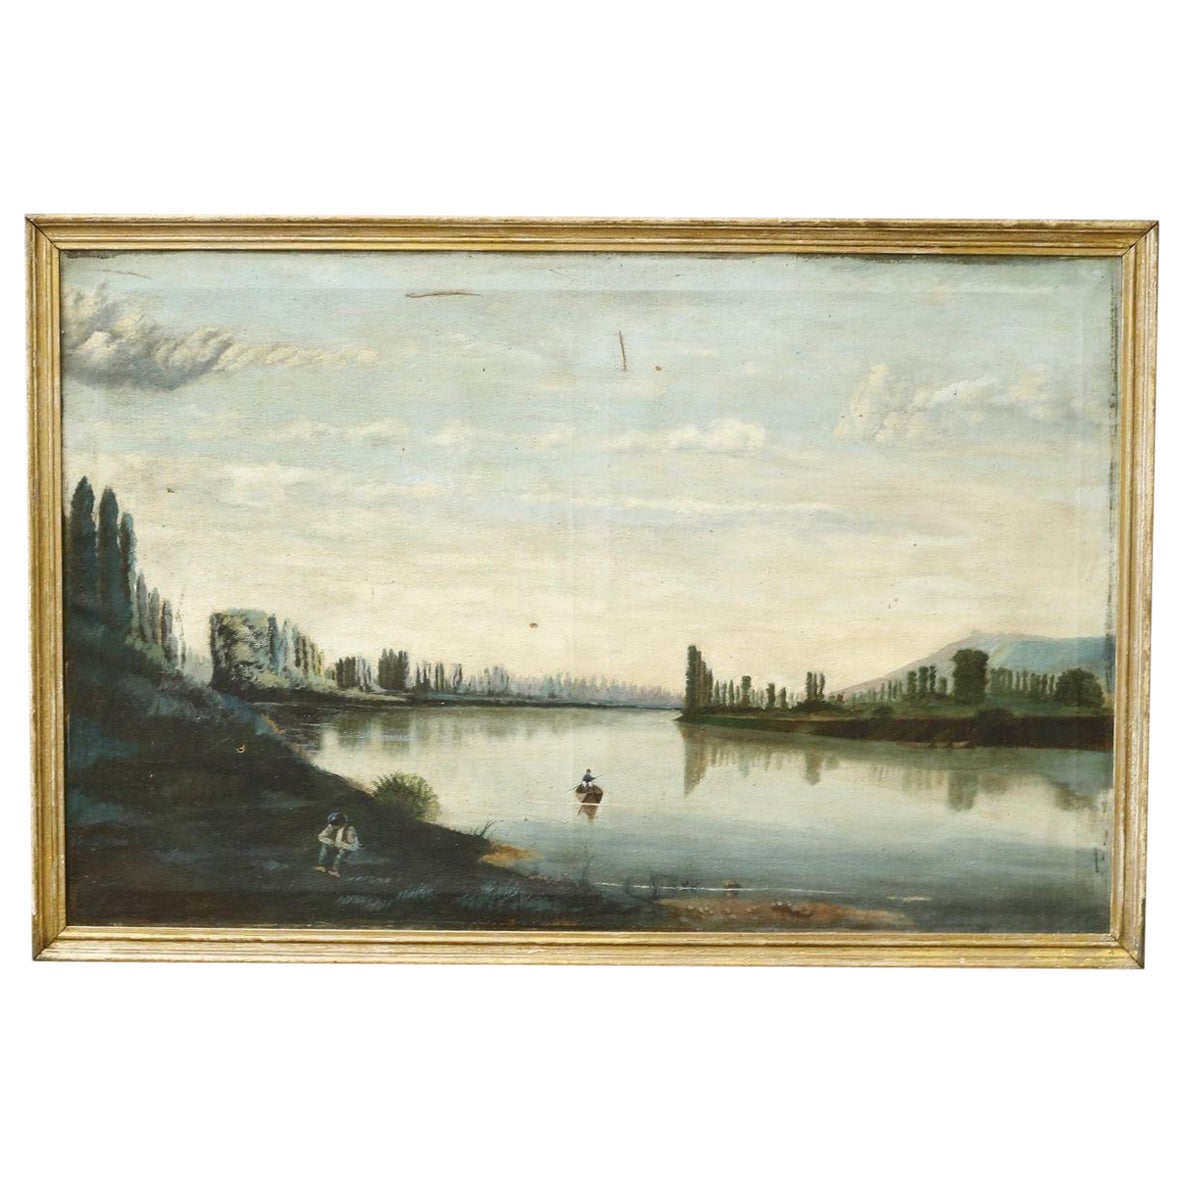 Große französische Landschaft des späten 18. Jahrhunderts, Öl auf Leinwand